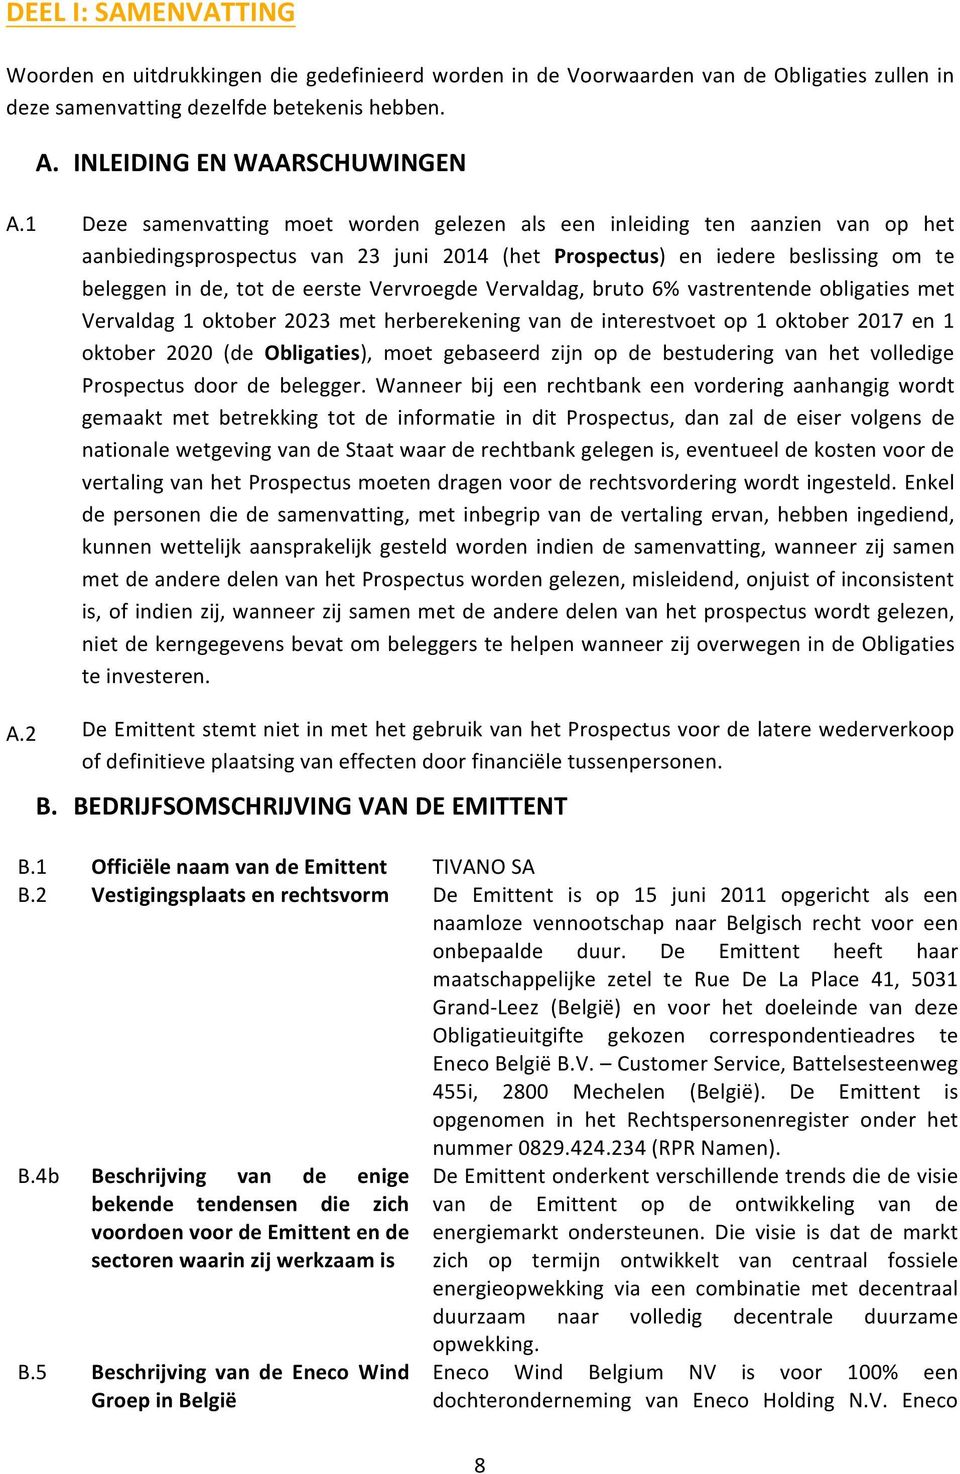 Vervroegde Vervaldag, bruto 6% vastrentende obligaties met Vervaldag 1 oktober 2023 met herberekening van de interestvoet op 1 oktober 2017 en 1 oktober 2020 (de Obligaties), moet gebaseerd zijn op